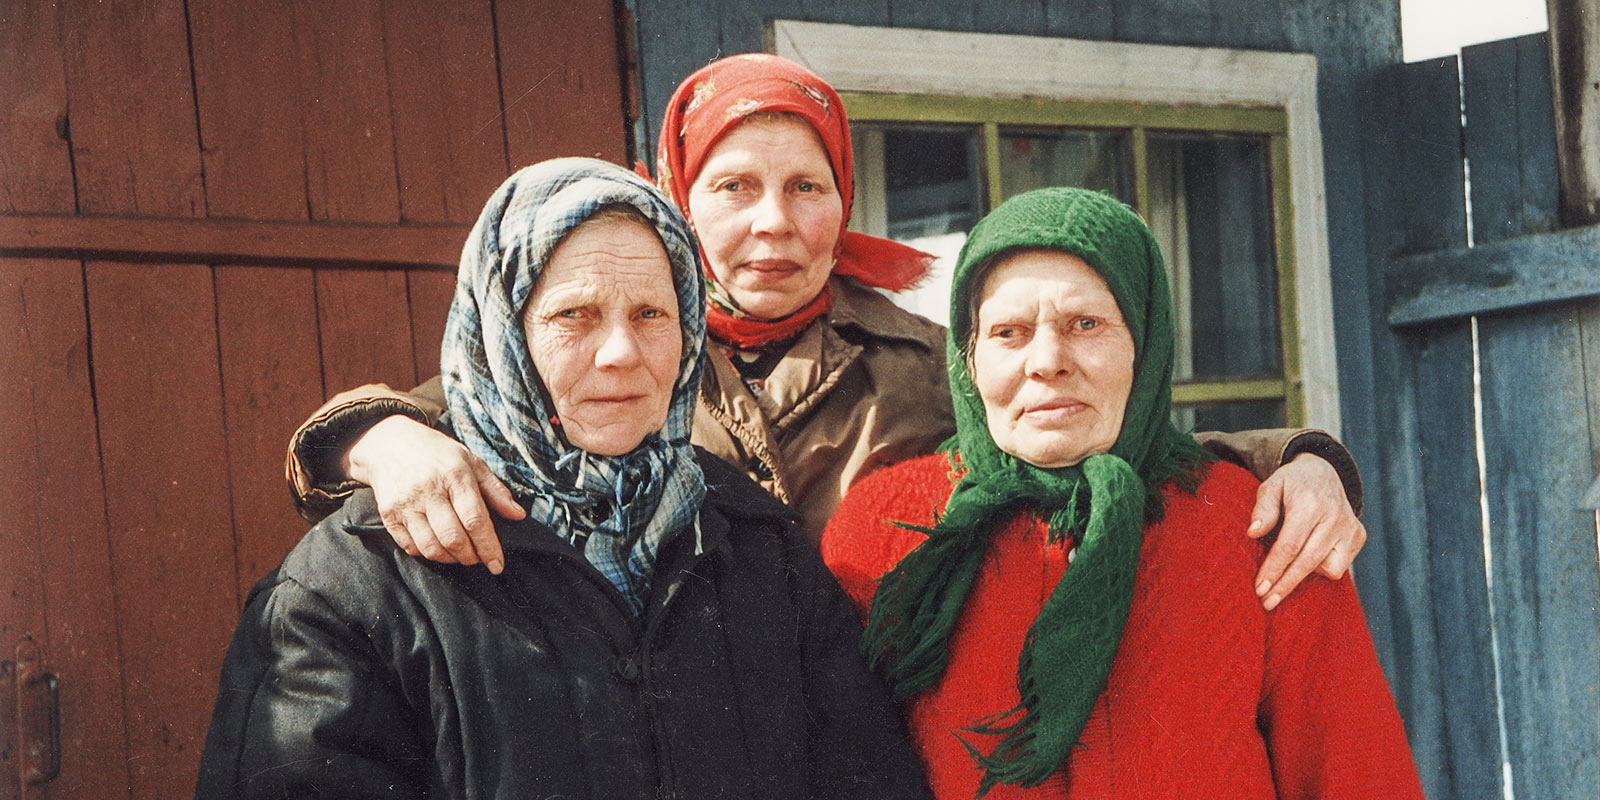 Три сестры из дер.Эстонка Камилла Вукс, Паулийнэ Тальвик и Эмми Юхансон были широко известны в округе благодаря своим песням. Фото: А. Корб 1996 г.